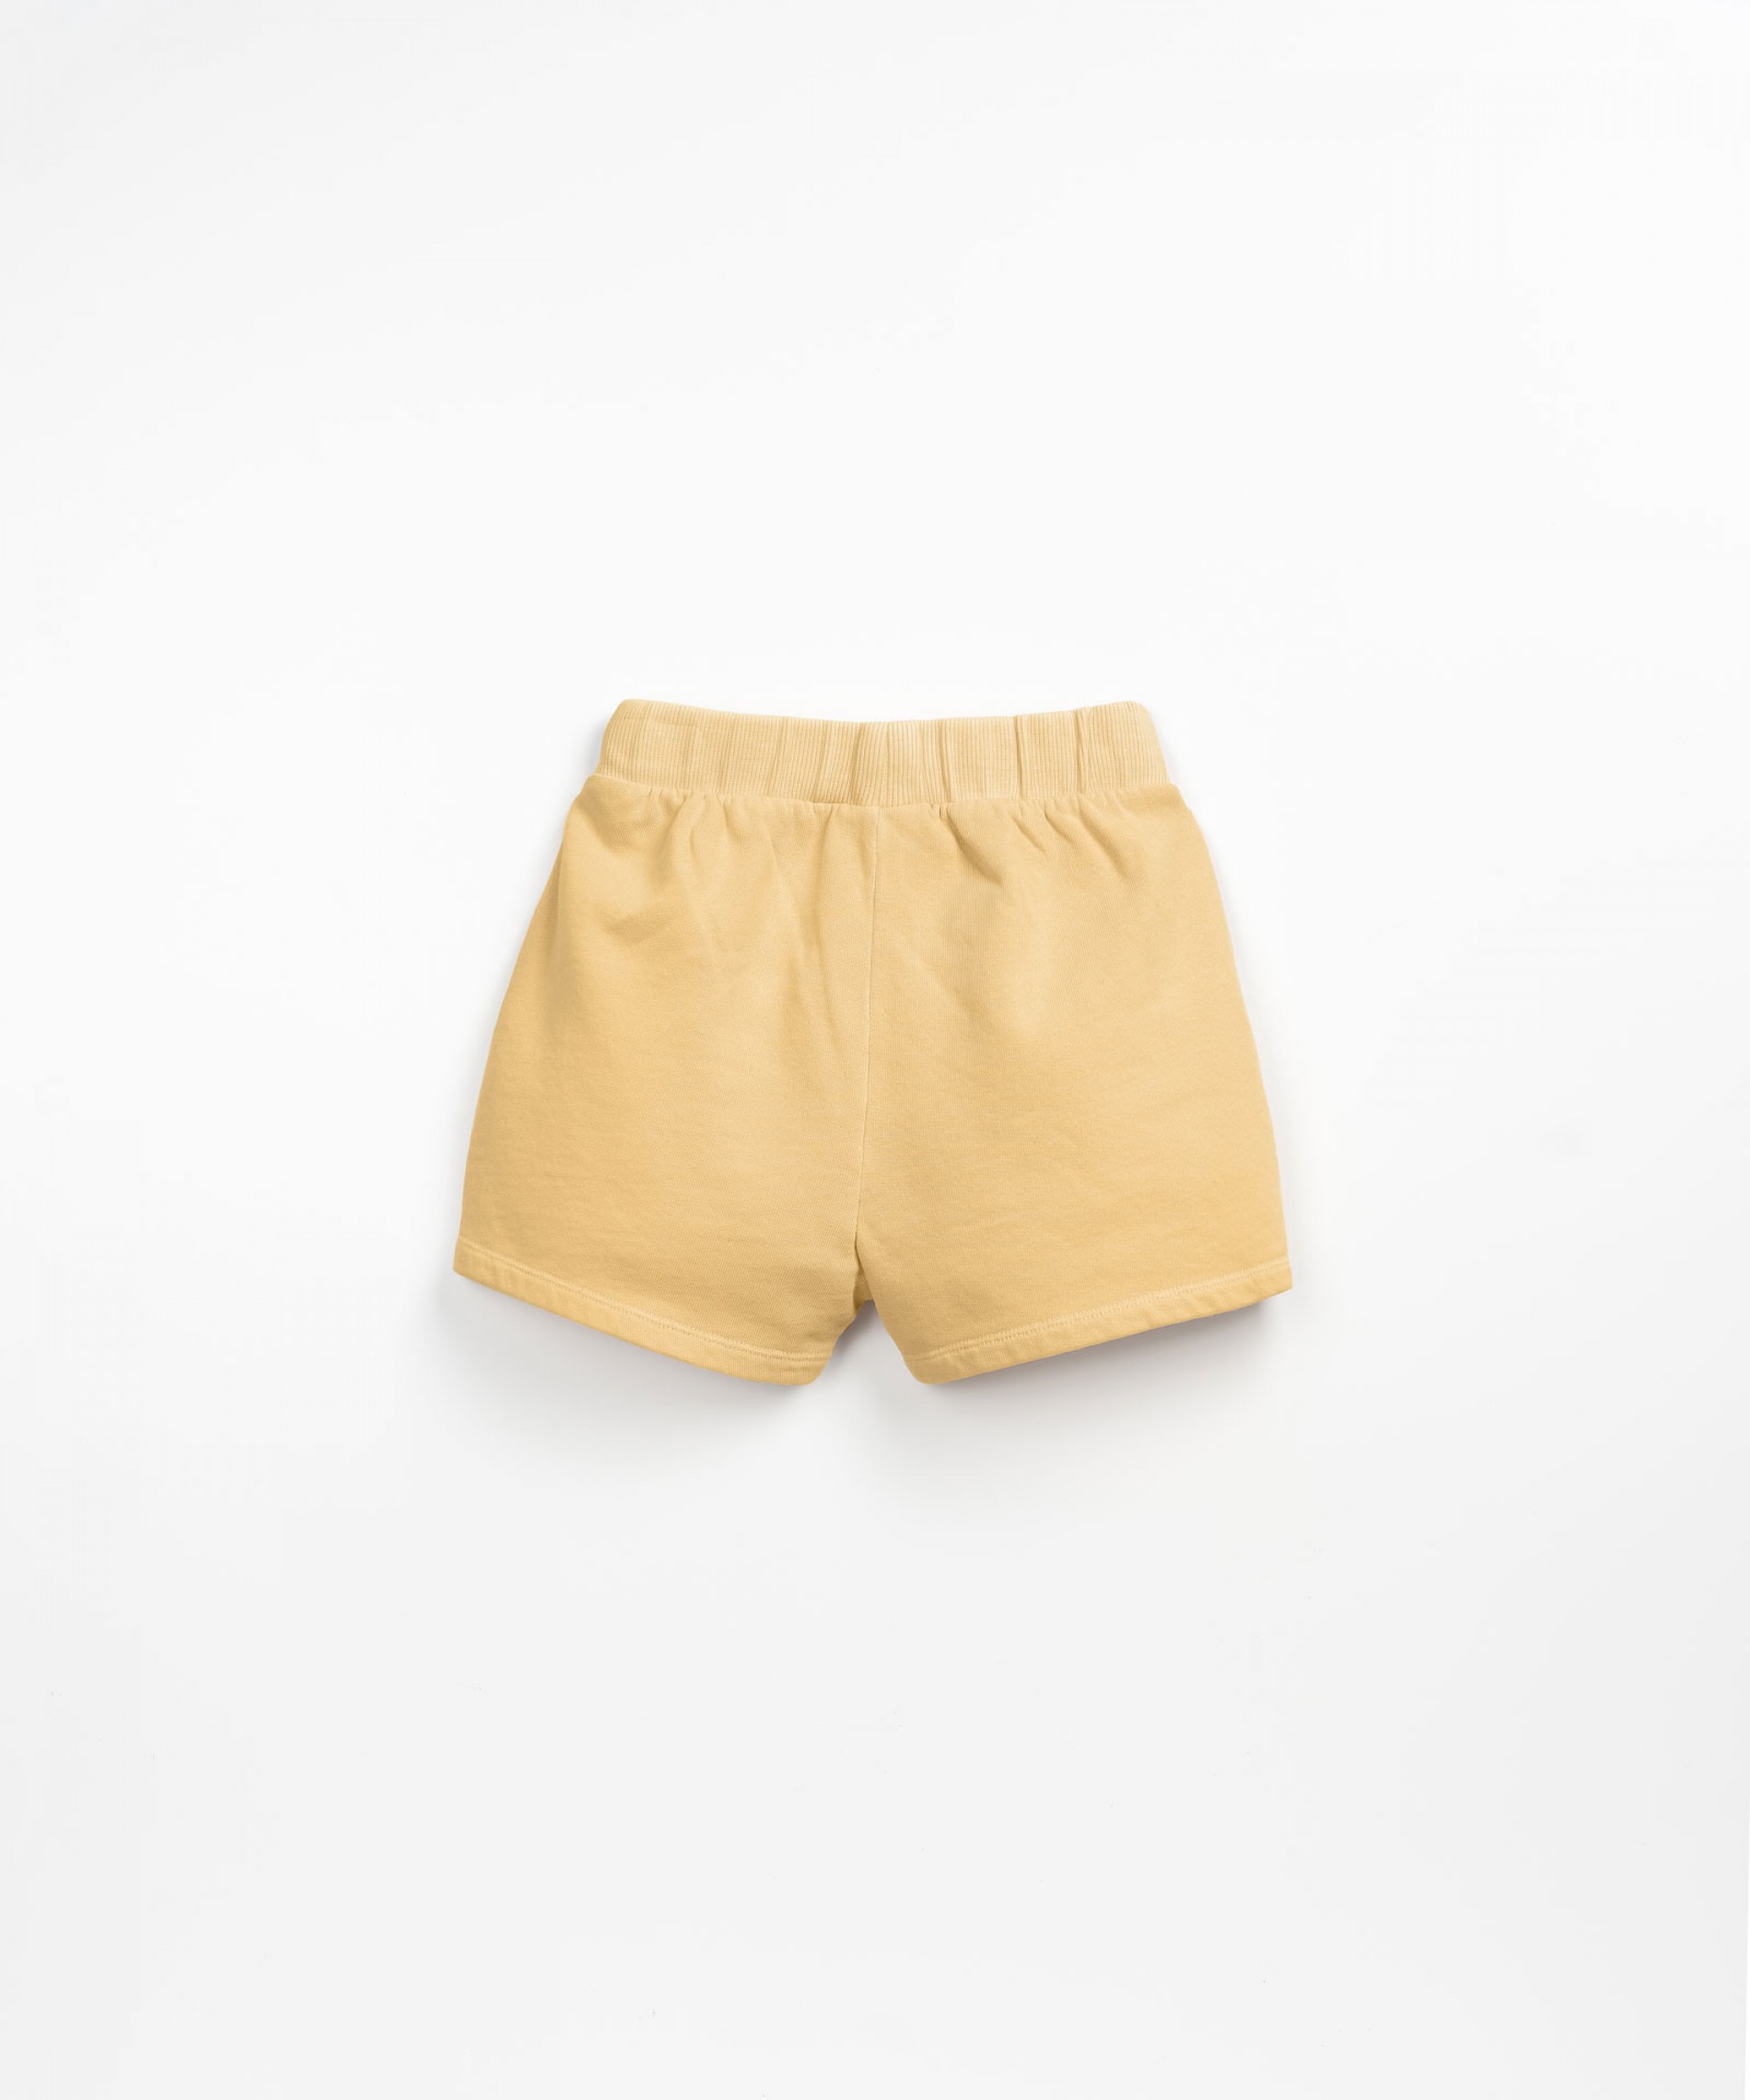 Pantaln corto con bolsillos | Textile Art